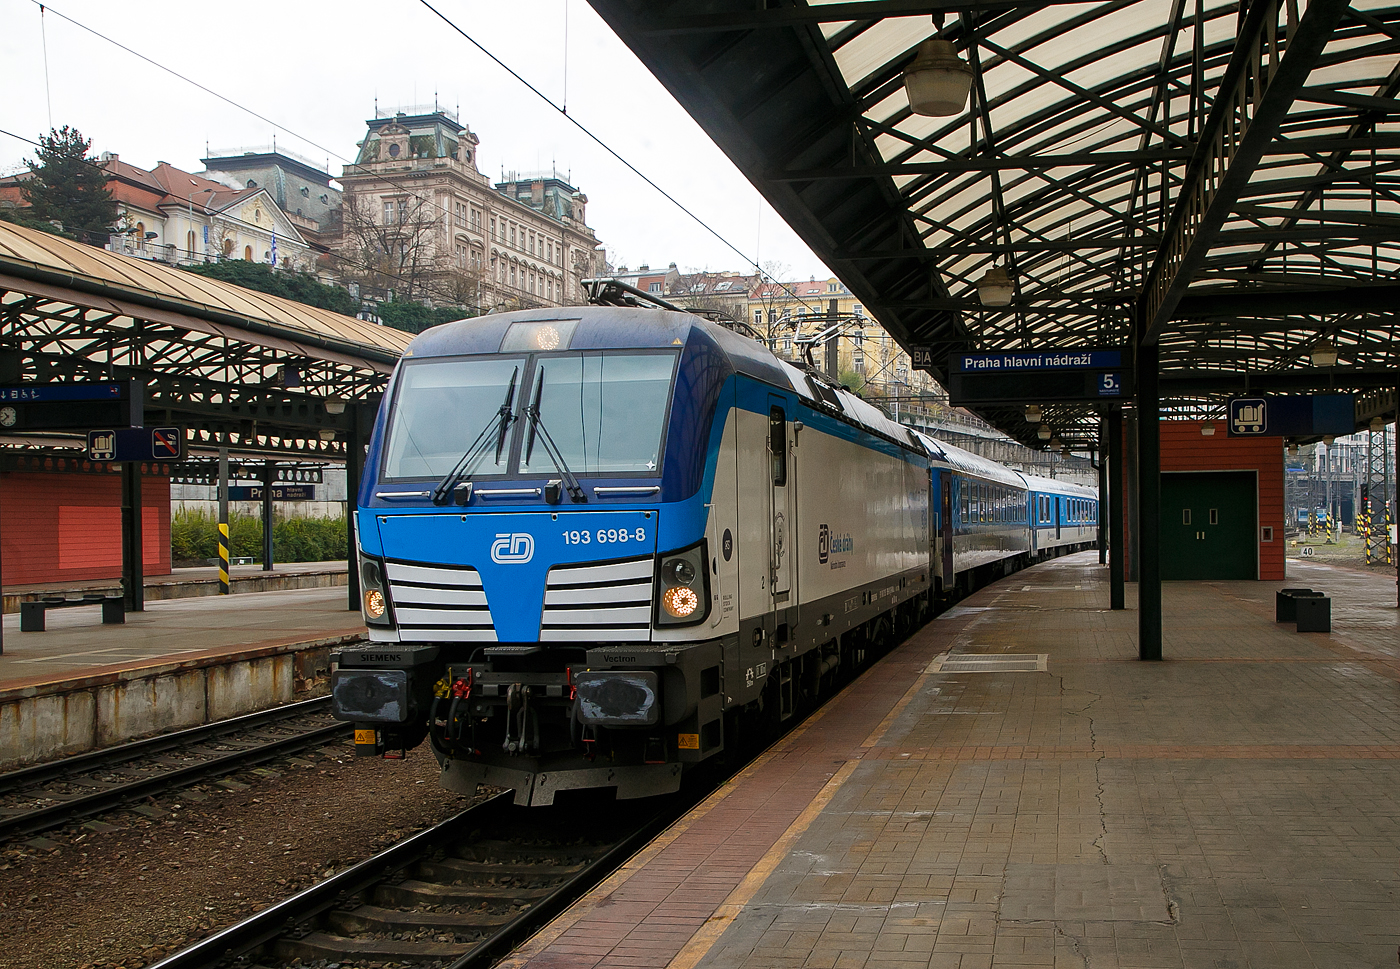 Die an die ČD - Česk drhy (Tschechischen Eisenbahnen) vermietete Siemens Vectron MS 193 698-8 (91 80 6193 698-8 D-RAILL) der S Rail Lease s.r.o. (Bratislava, Slowakei) fhrt am 23.11.2022 mit einem IC in den Hauptbahnhof Prag (Praha hlavn ndra) ein.

Die Siemens X4E bzw. Siemens Vectron MS wurde 2020 von Siemens Mobilitiy in Mnchen-Allach unter der Fabriknummer 22771gebaut. Die Vectron MS – Variante A01 mit einer Leistung von 6.4 MW (unter Wechselstrom) mit einer zugelassenen Hchstgeschwindigkeit fr 200 km/h hat die Zulassungen fr Deutschland, sterreich, Slowakei, Rumnien, Polen, Tschechien und Ungarn (D/A/SK/RO/PL/CZ/H).